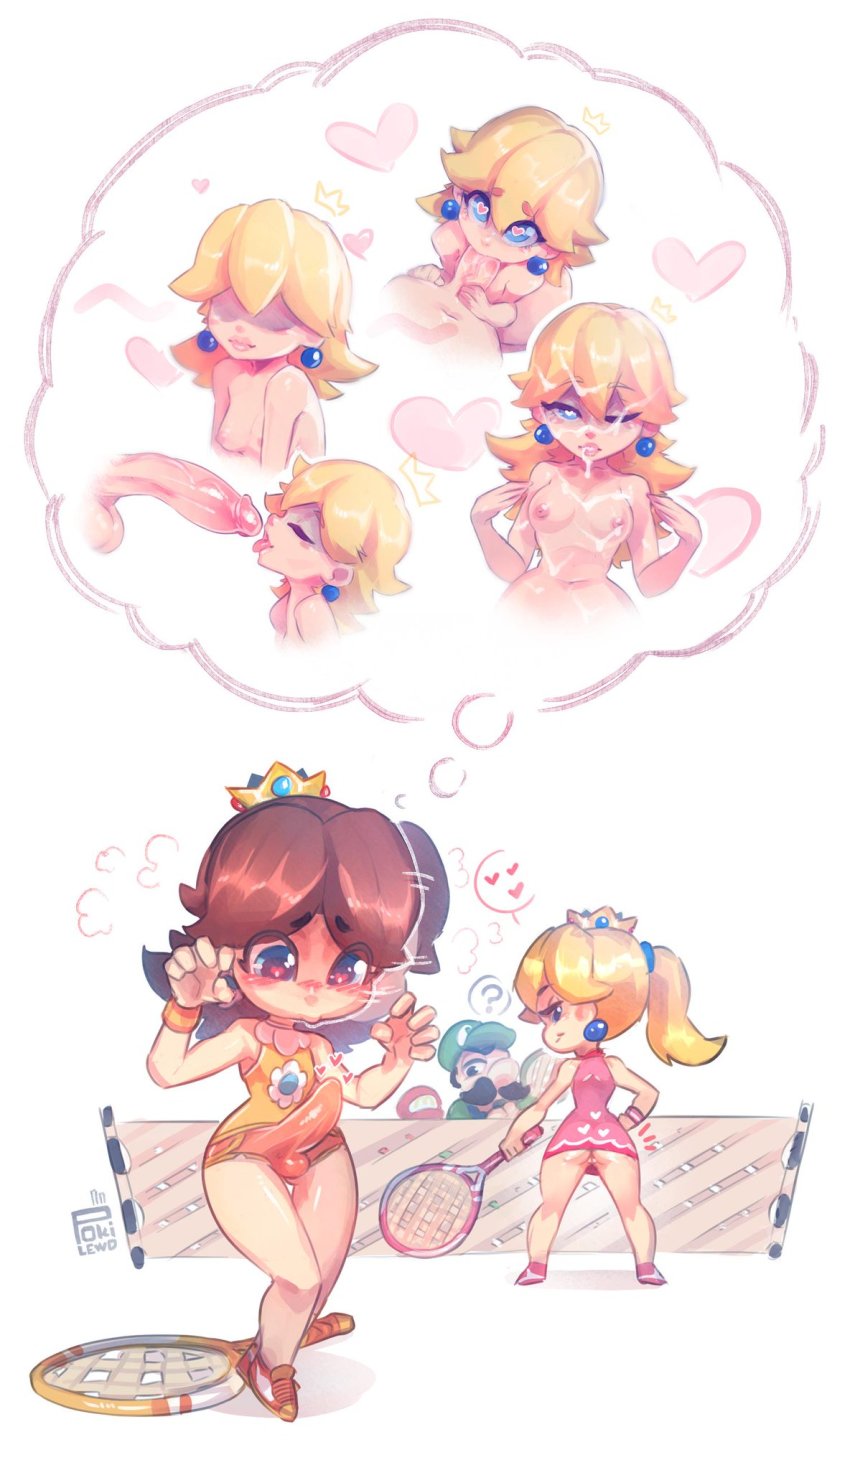 Pokilewd Luigi Princess Daisy Princess Peach Mario Series Mario Tennis Nintendo Super